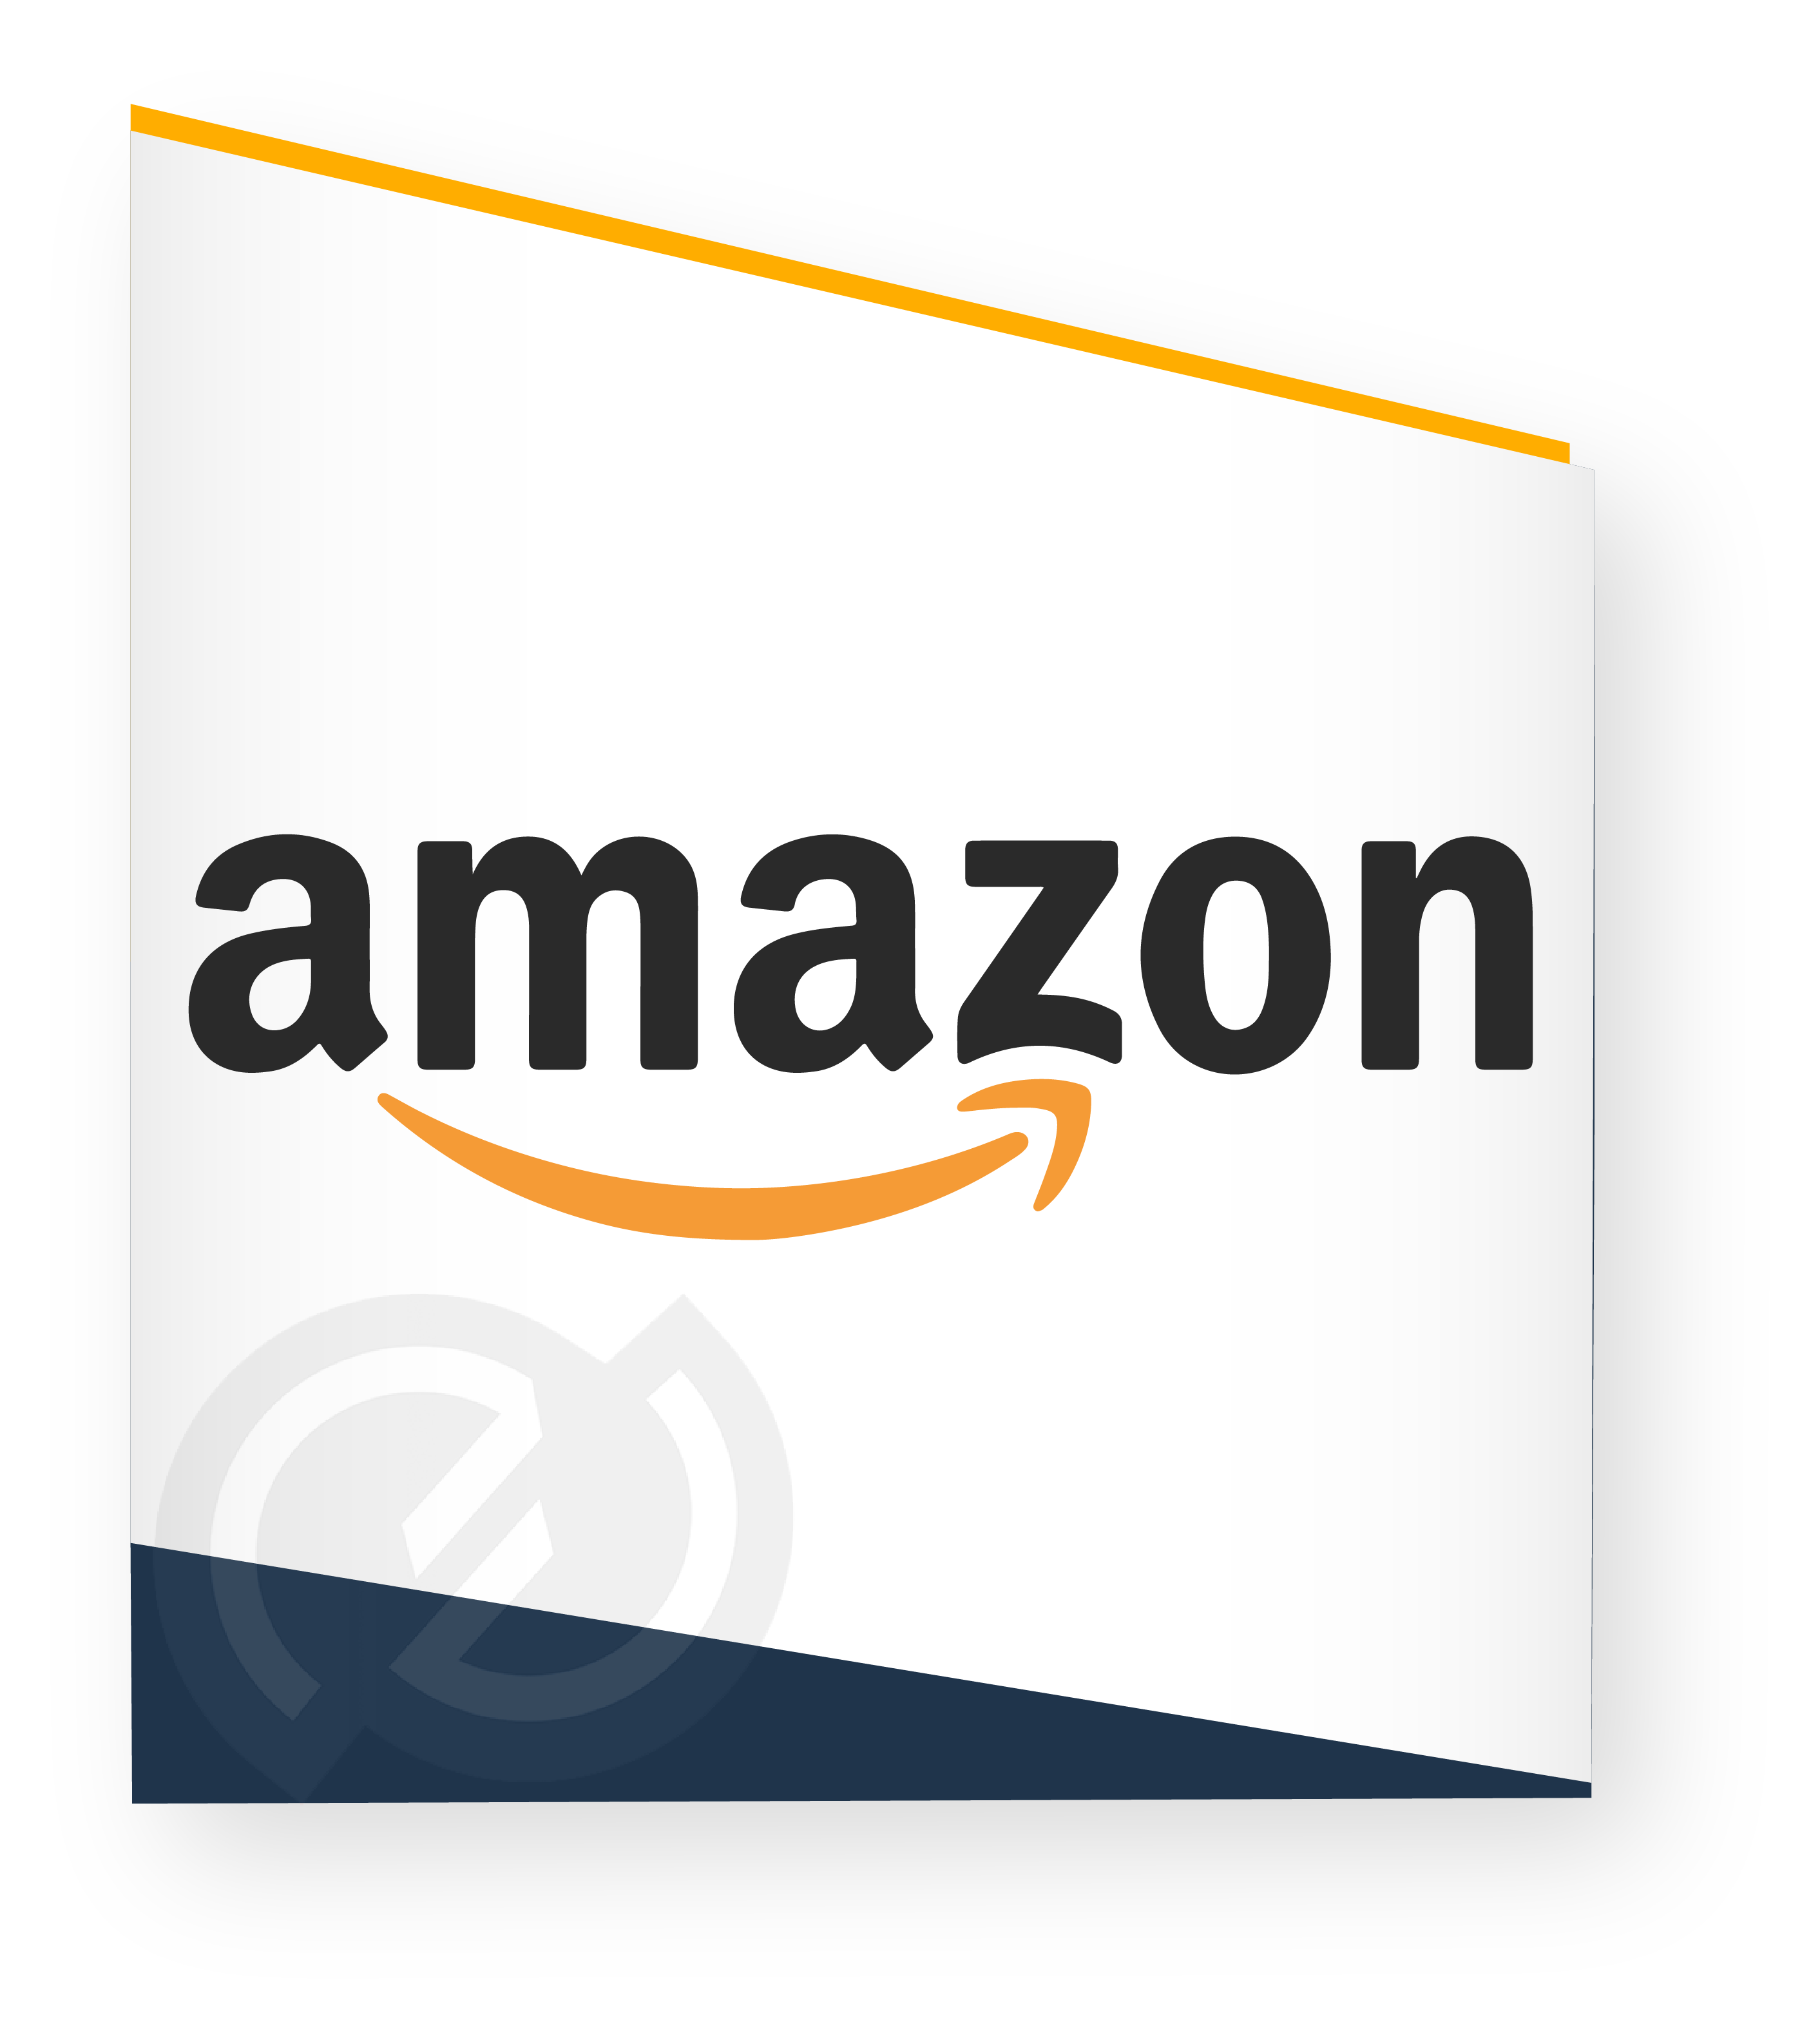 Image logo Amazon